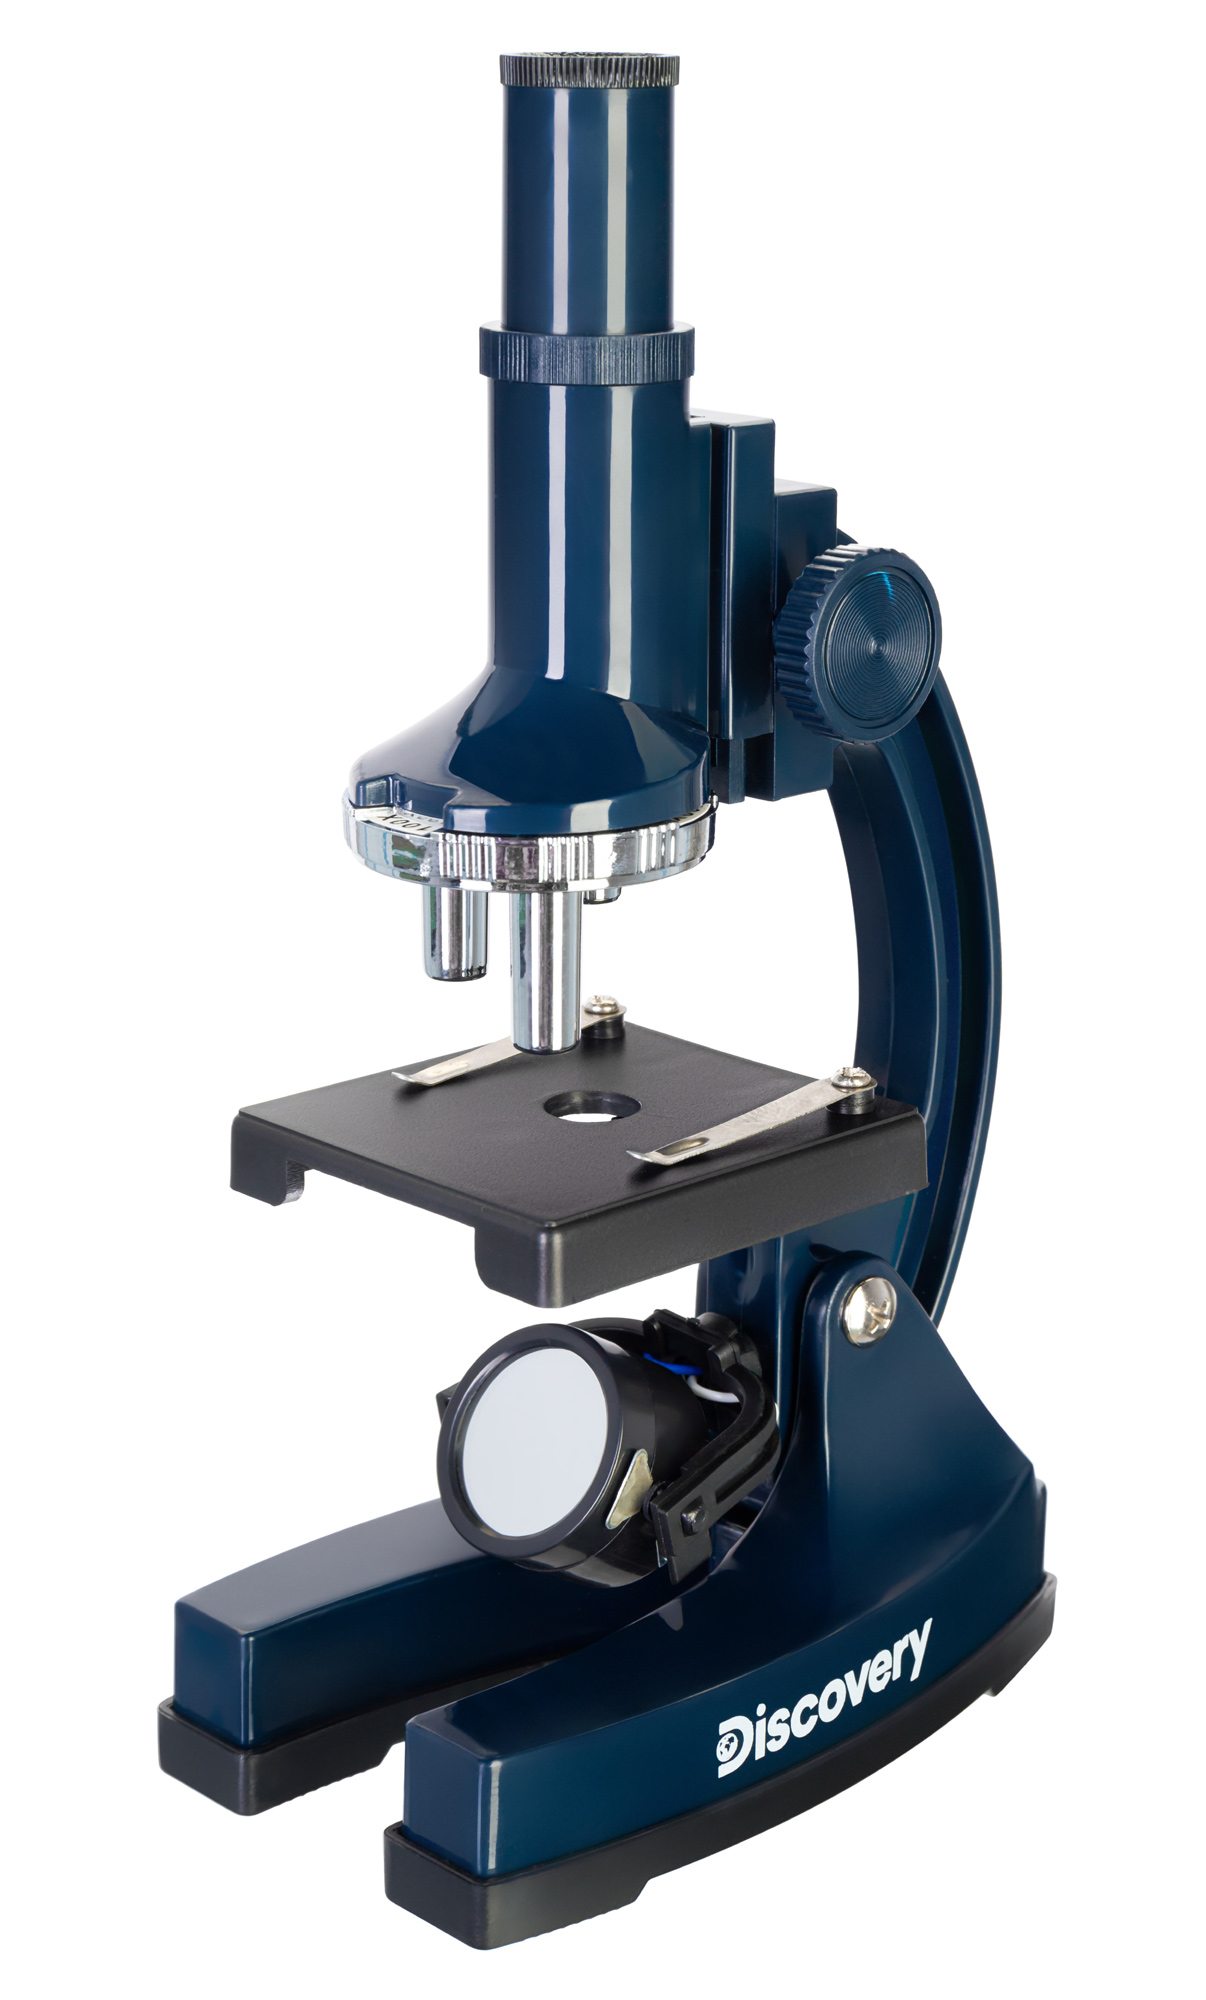 Микроскоп Levenhuk Discovery Centi 02 с книгой 78241 микроскоп discovery micro gravity с книгой